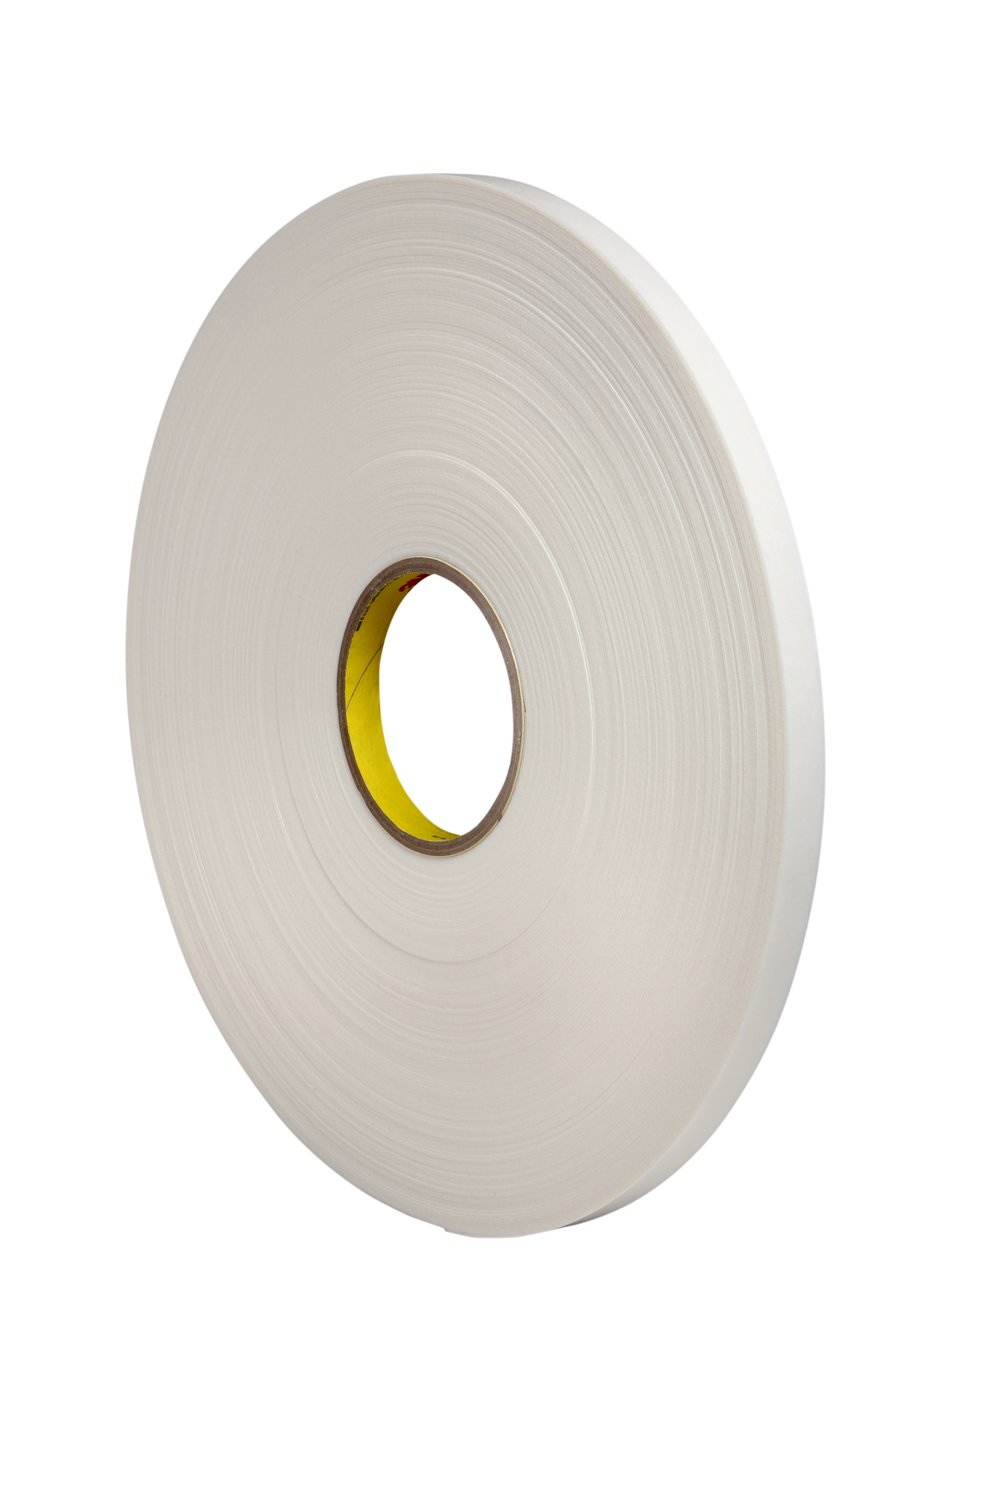 7000028666 - 3M Urethane Foam Tape 4108, Natural, 3/4 in x 36 yd, 125 mil, 12 rolls
per case